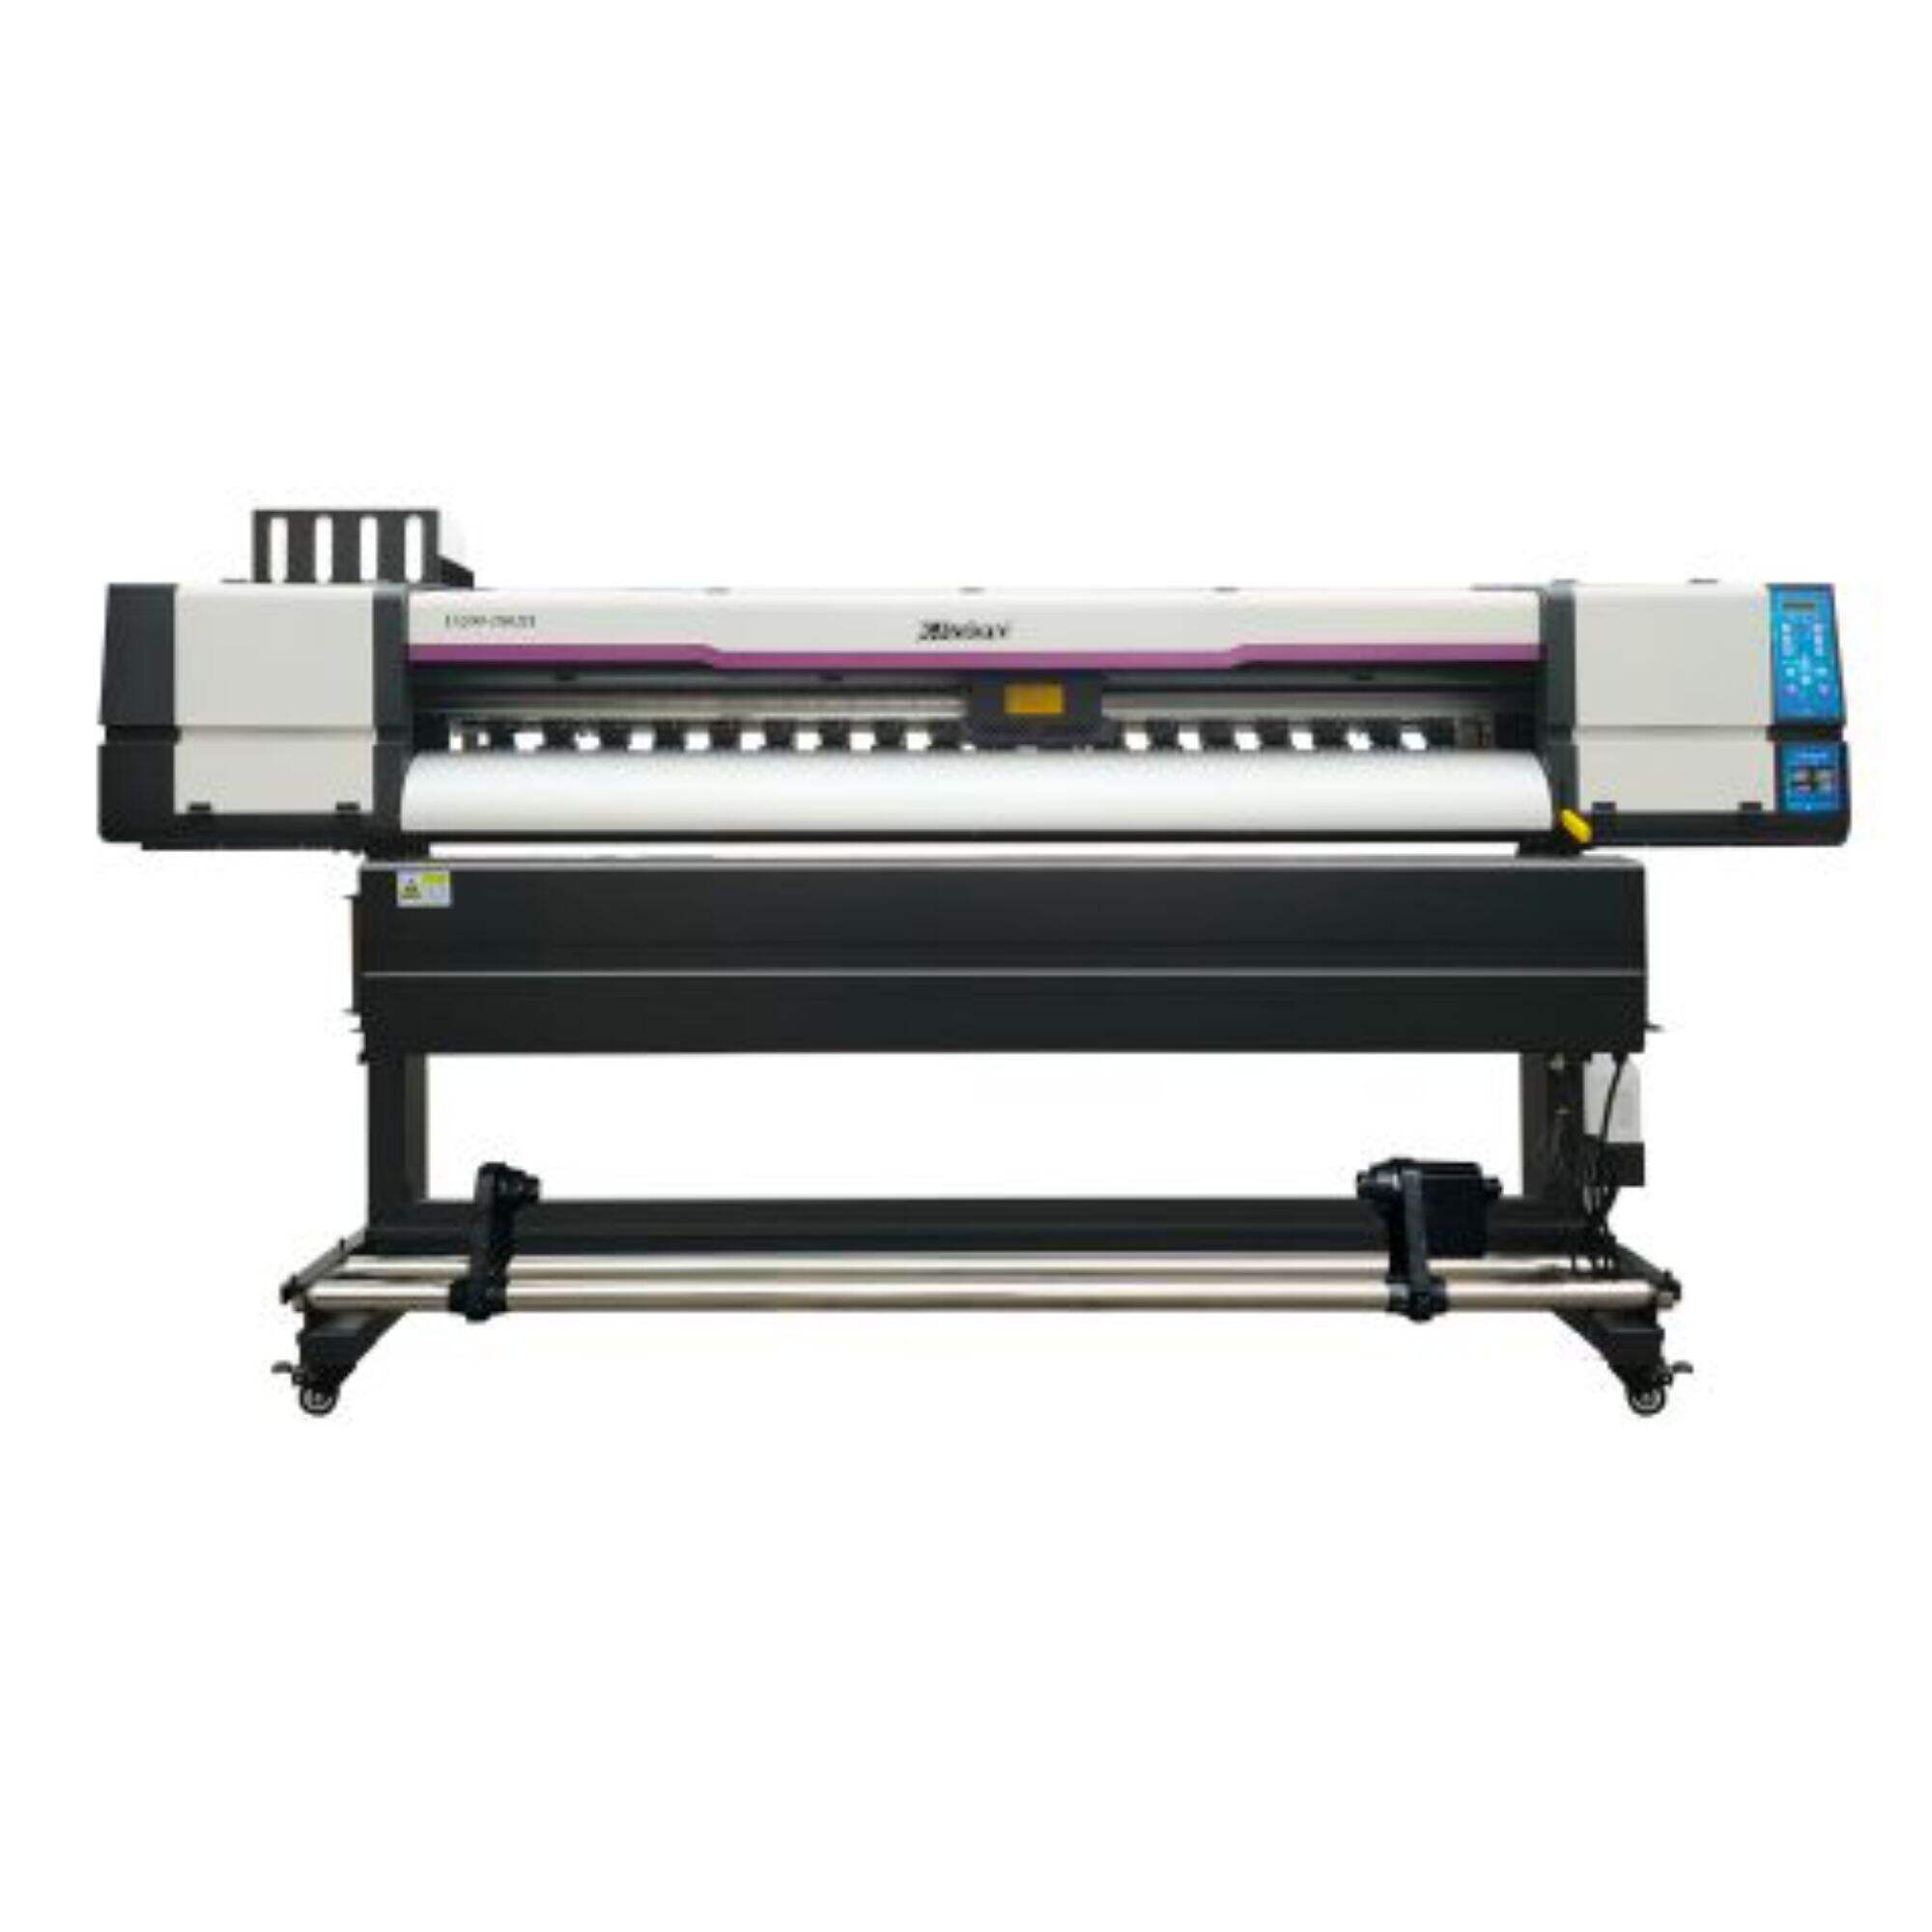 XL-1802H I3200 Daxili/açıq printer